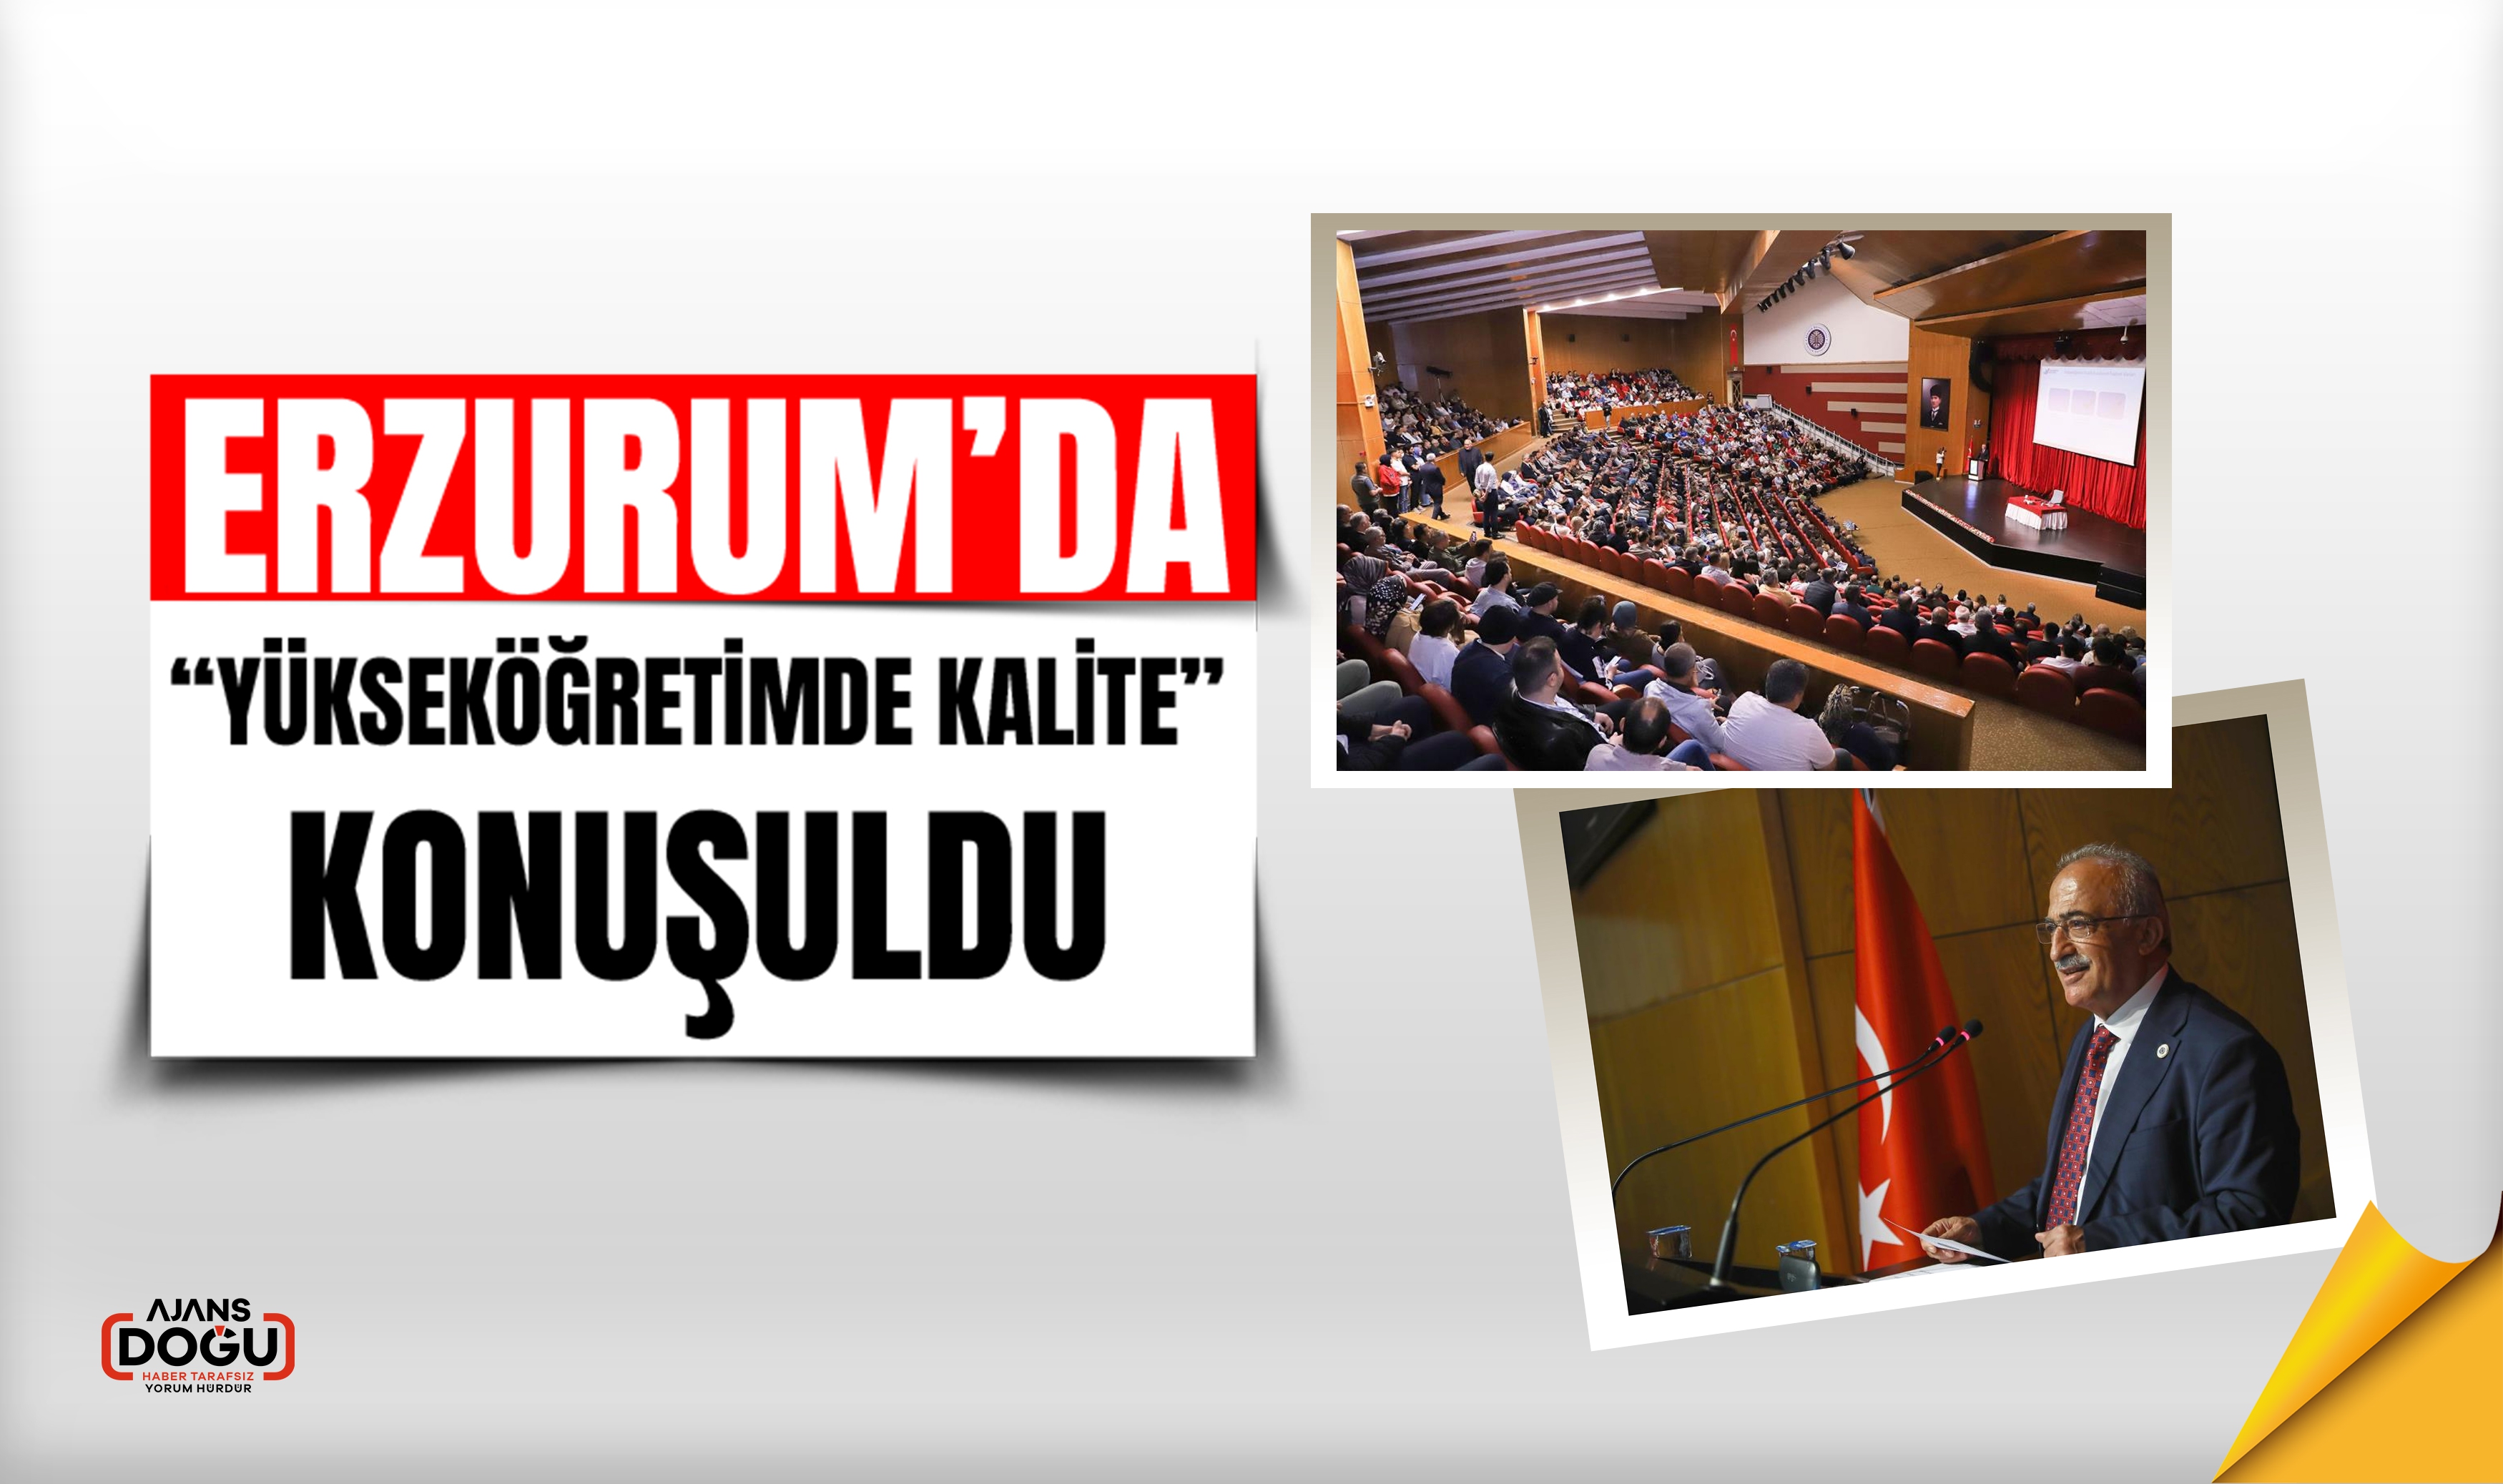 Erzurum’da “Yükseköğretimde Kalite” konuşuldu